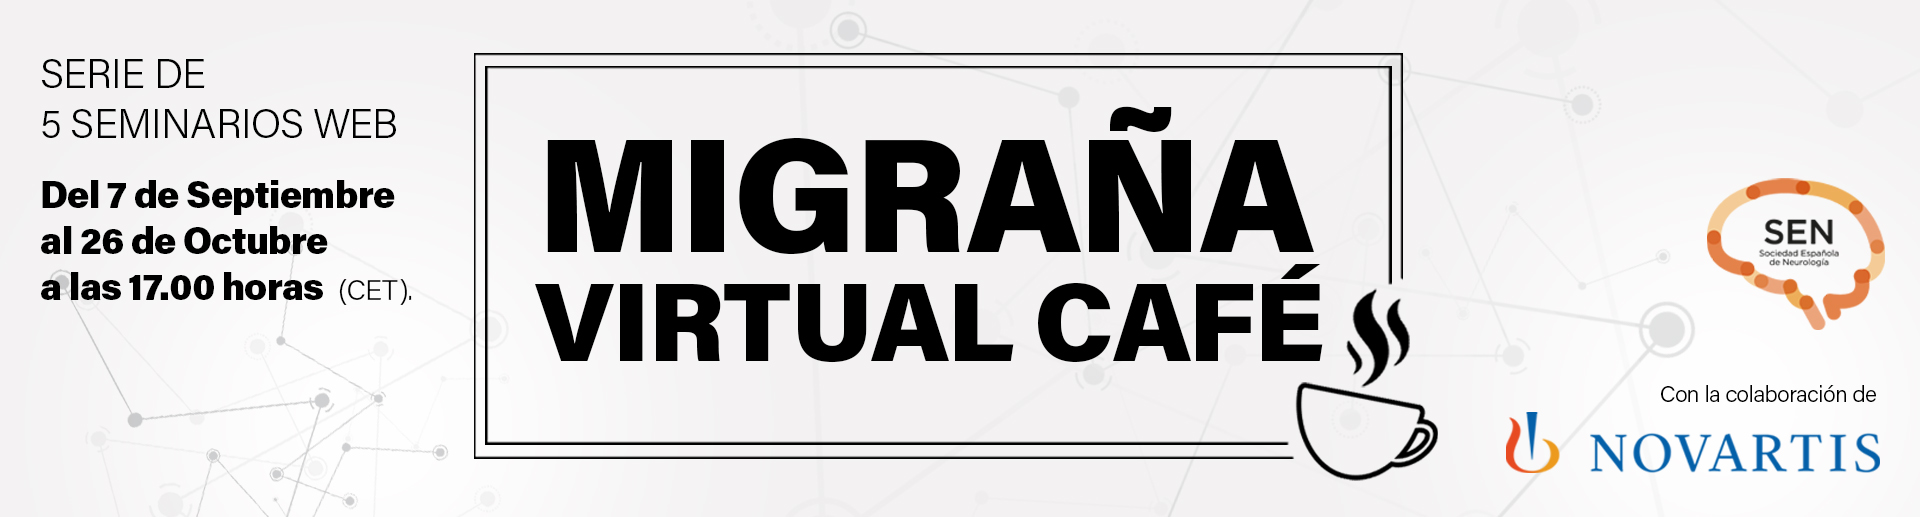 migrana virtual cafe 1920px promocion general